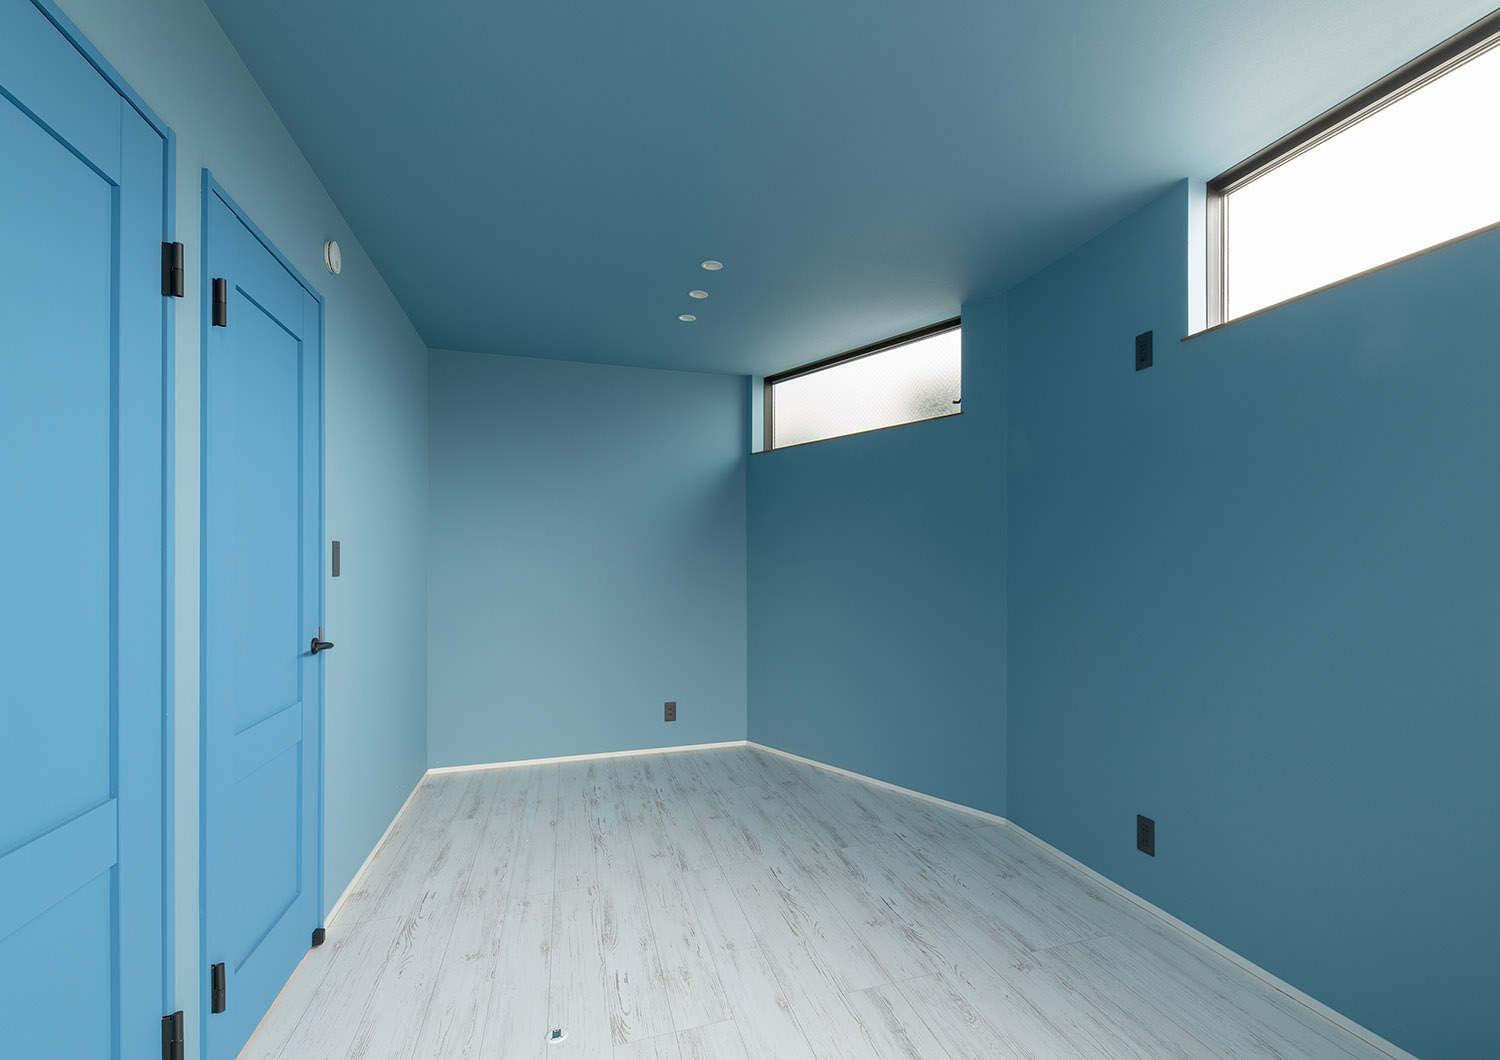 ハイサイドライトがある水色の扉と壁紙で左右対称の部屋・デザイン住宅